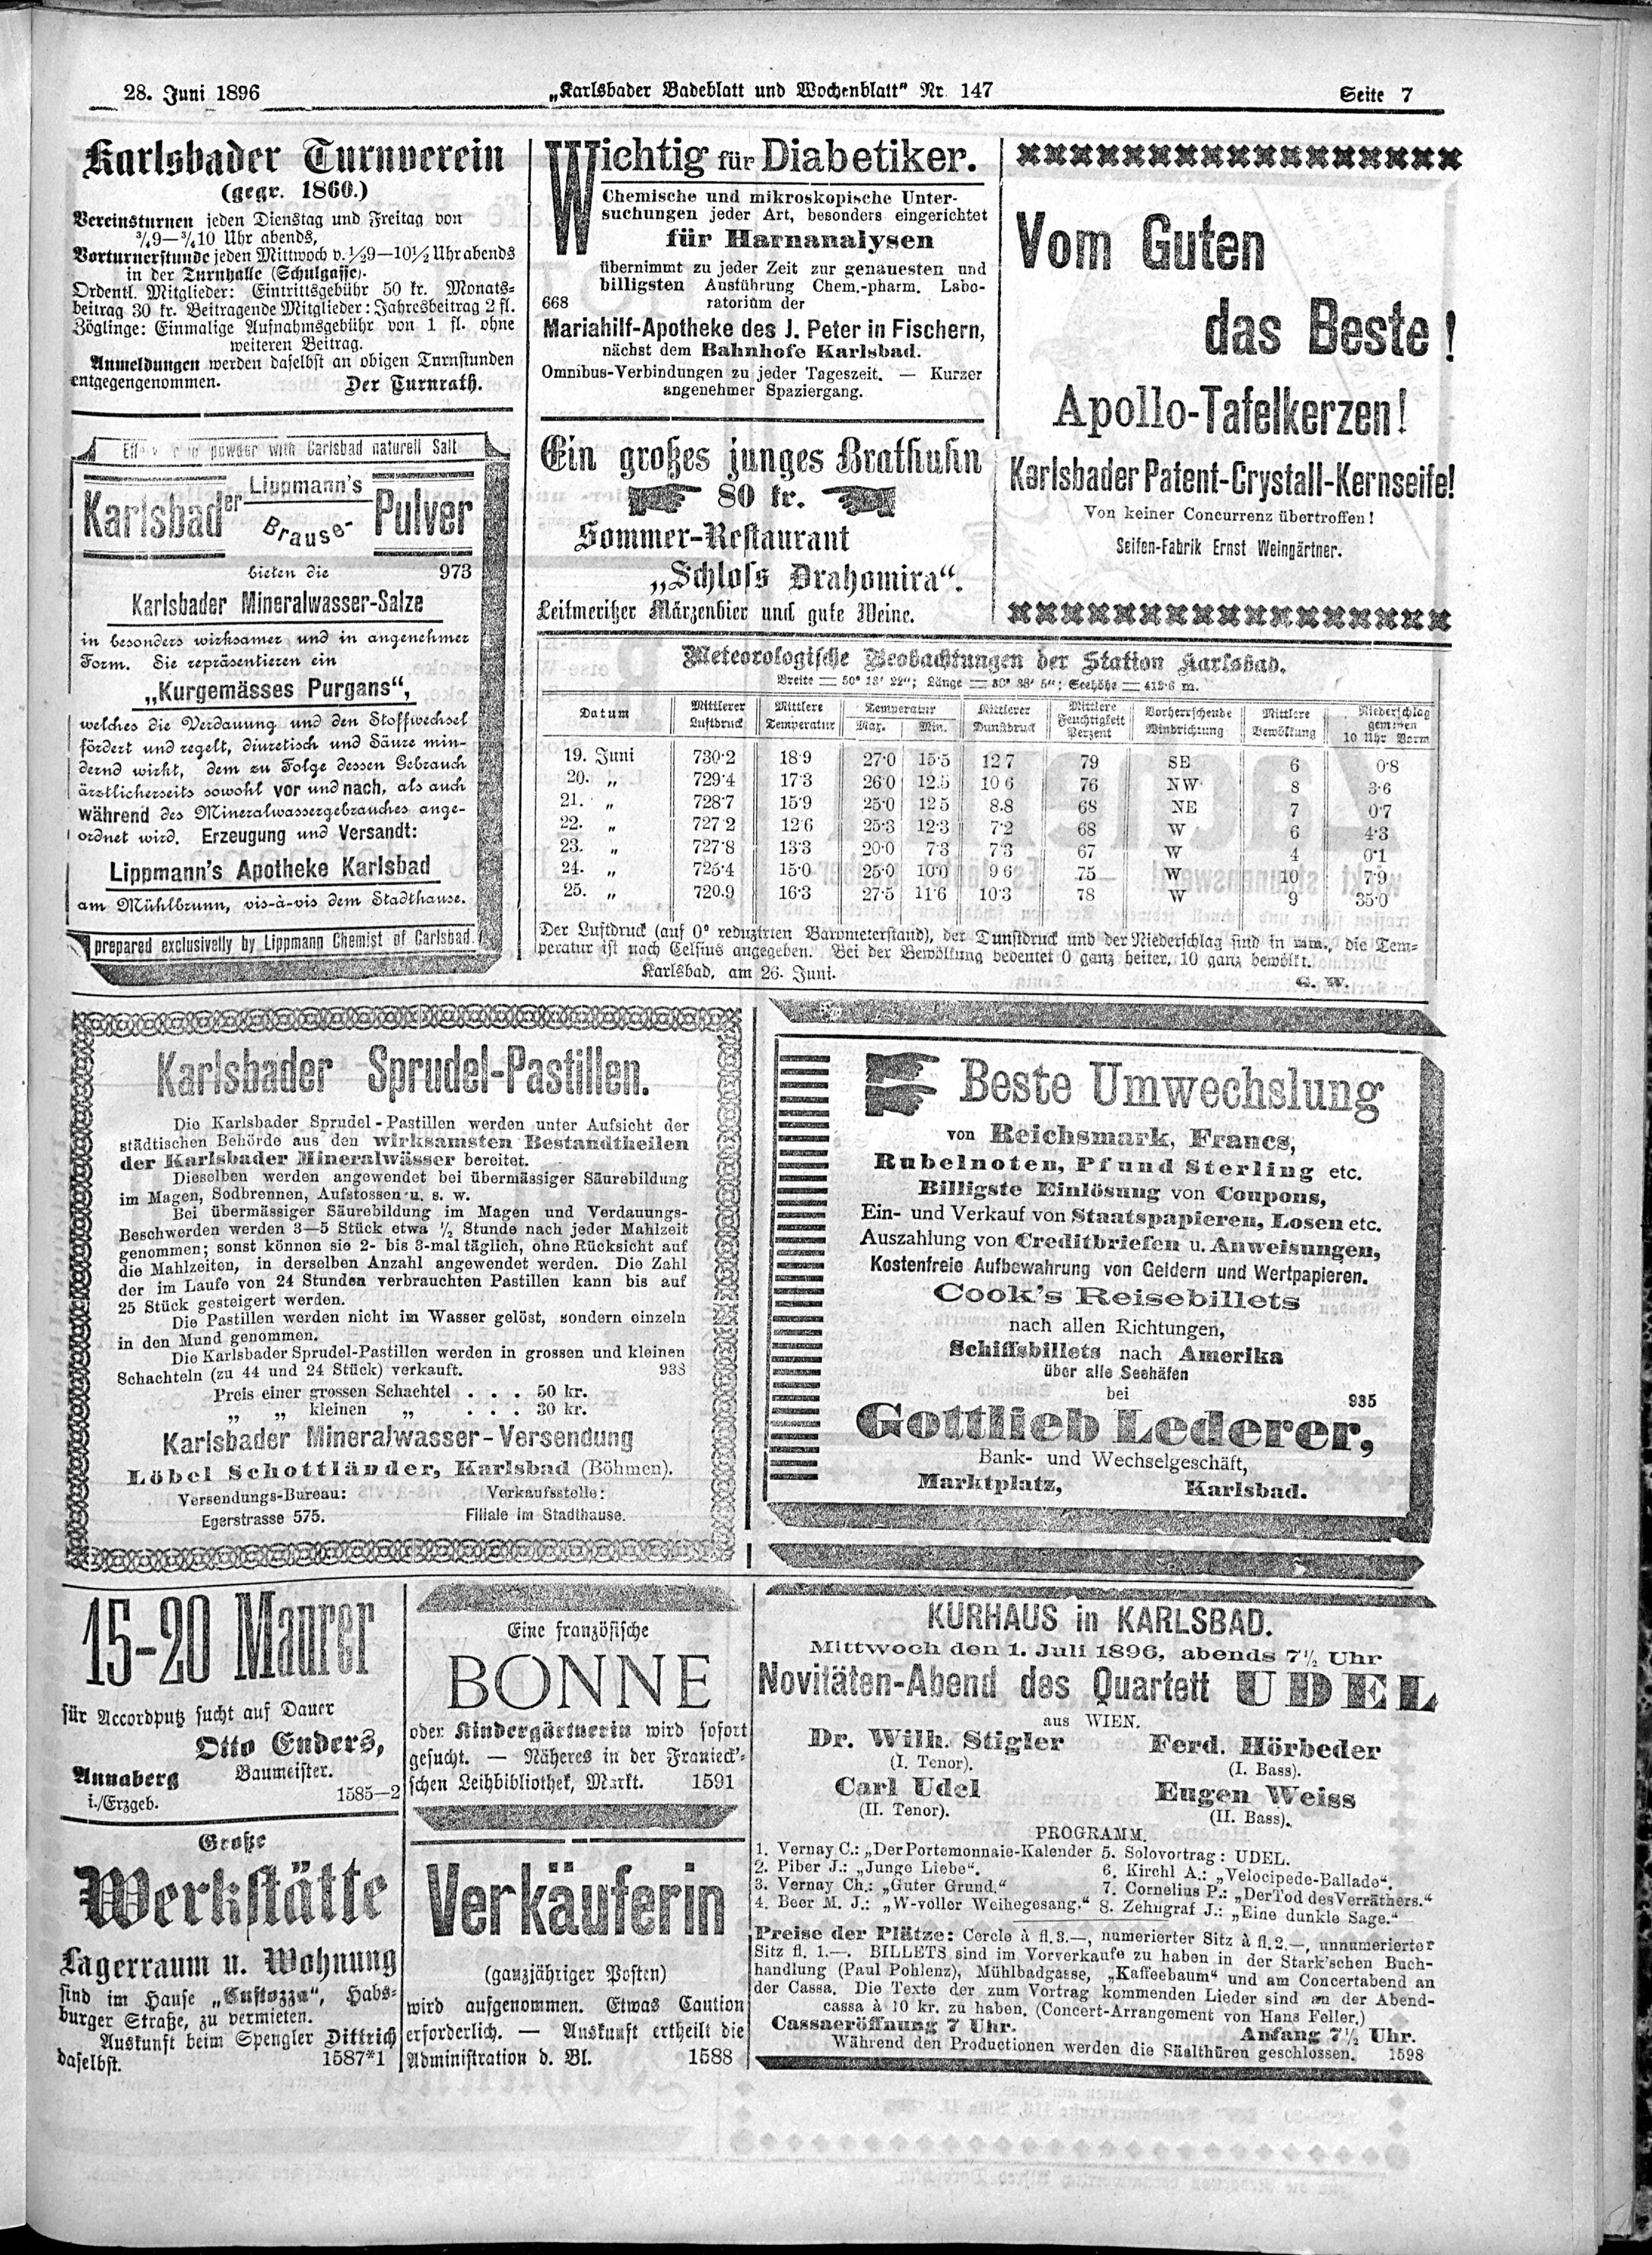 7. karlsbader-badeblatt-1896-06-28-n147_6845